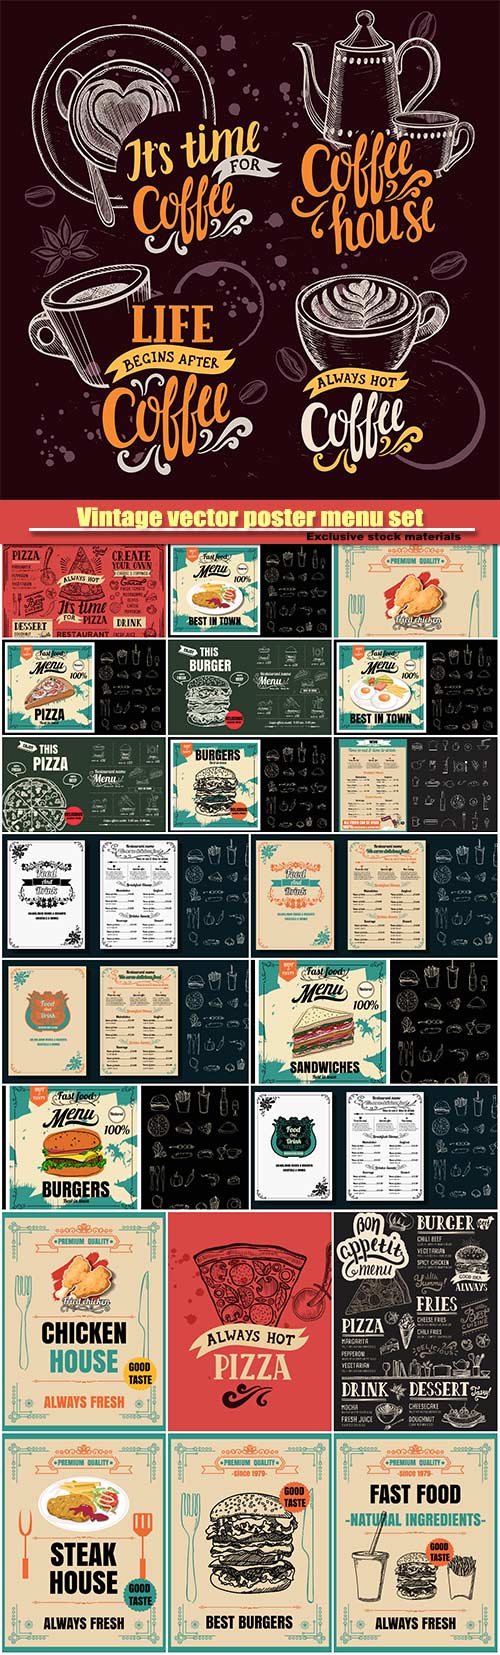 Vintage vector poster menu set